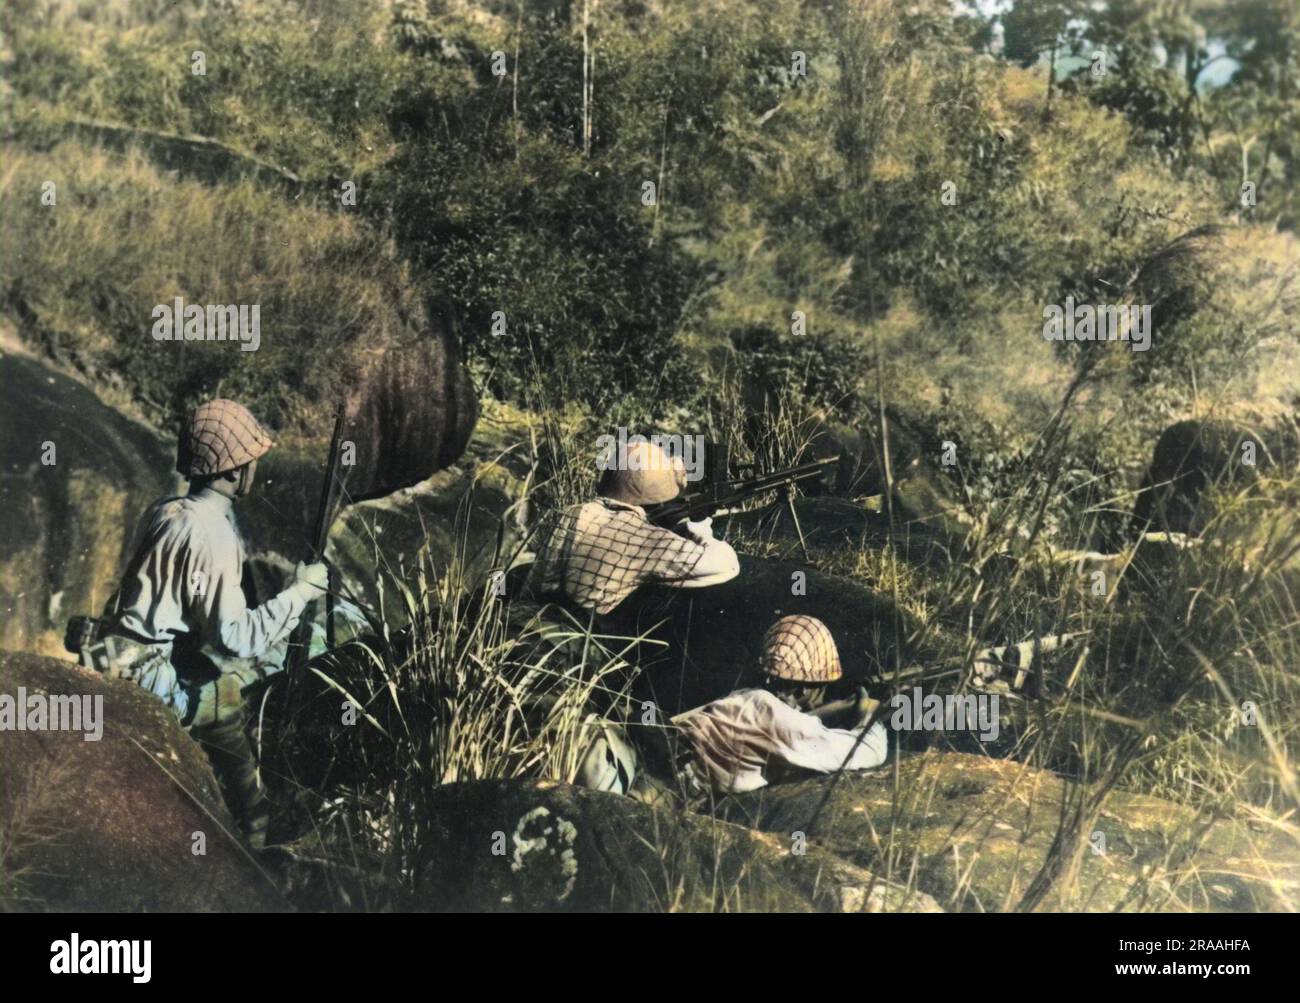 Japanische Scharfschützen in einer fortgeschrittenen Position in Südchina während des chinesisch-japanischen Krieges Datum: 1937-1945 Stockfoto